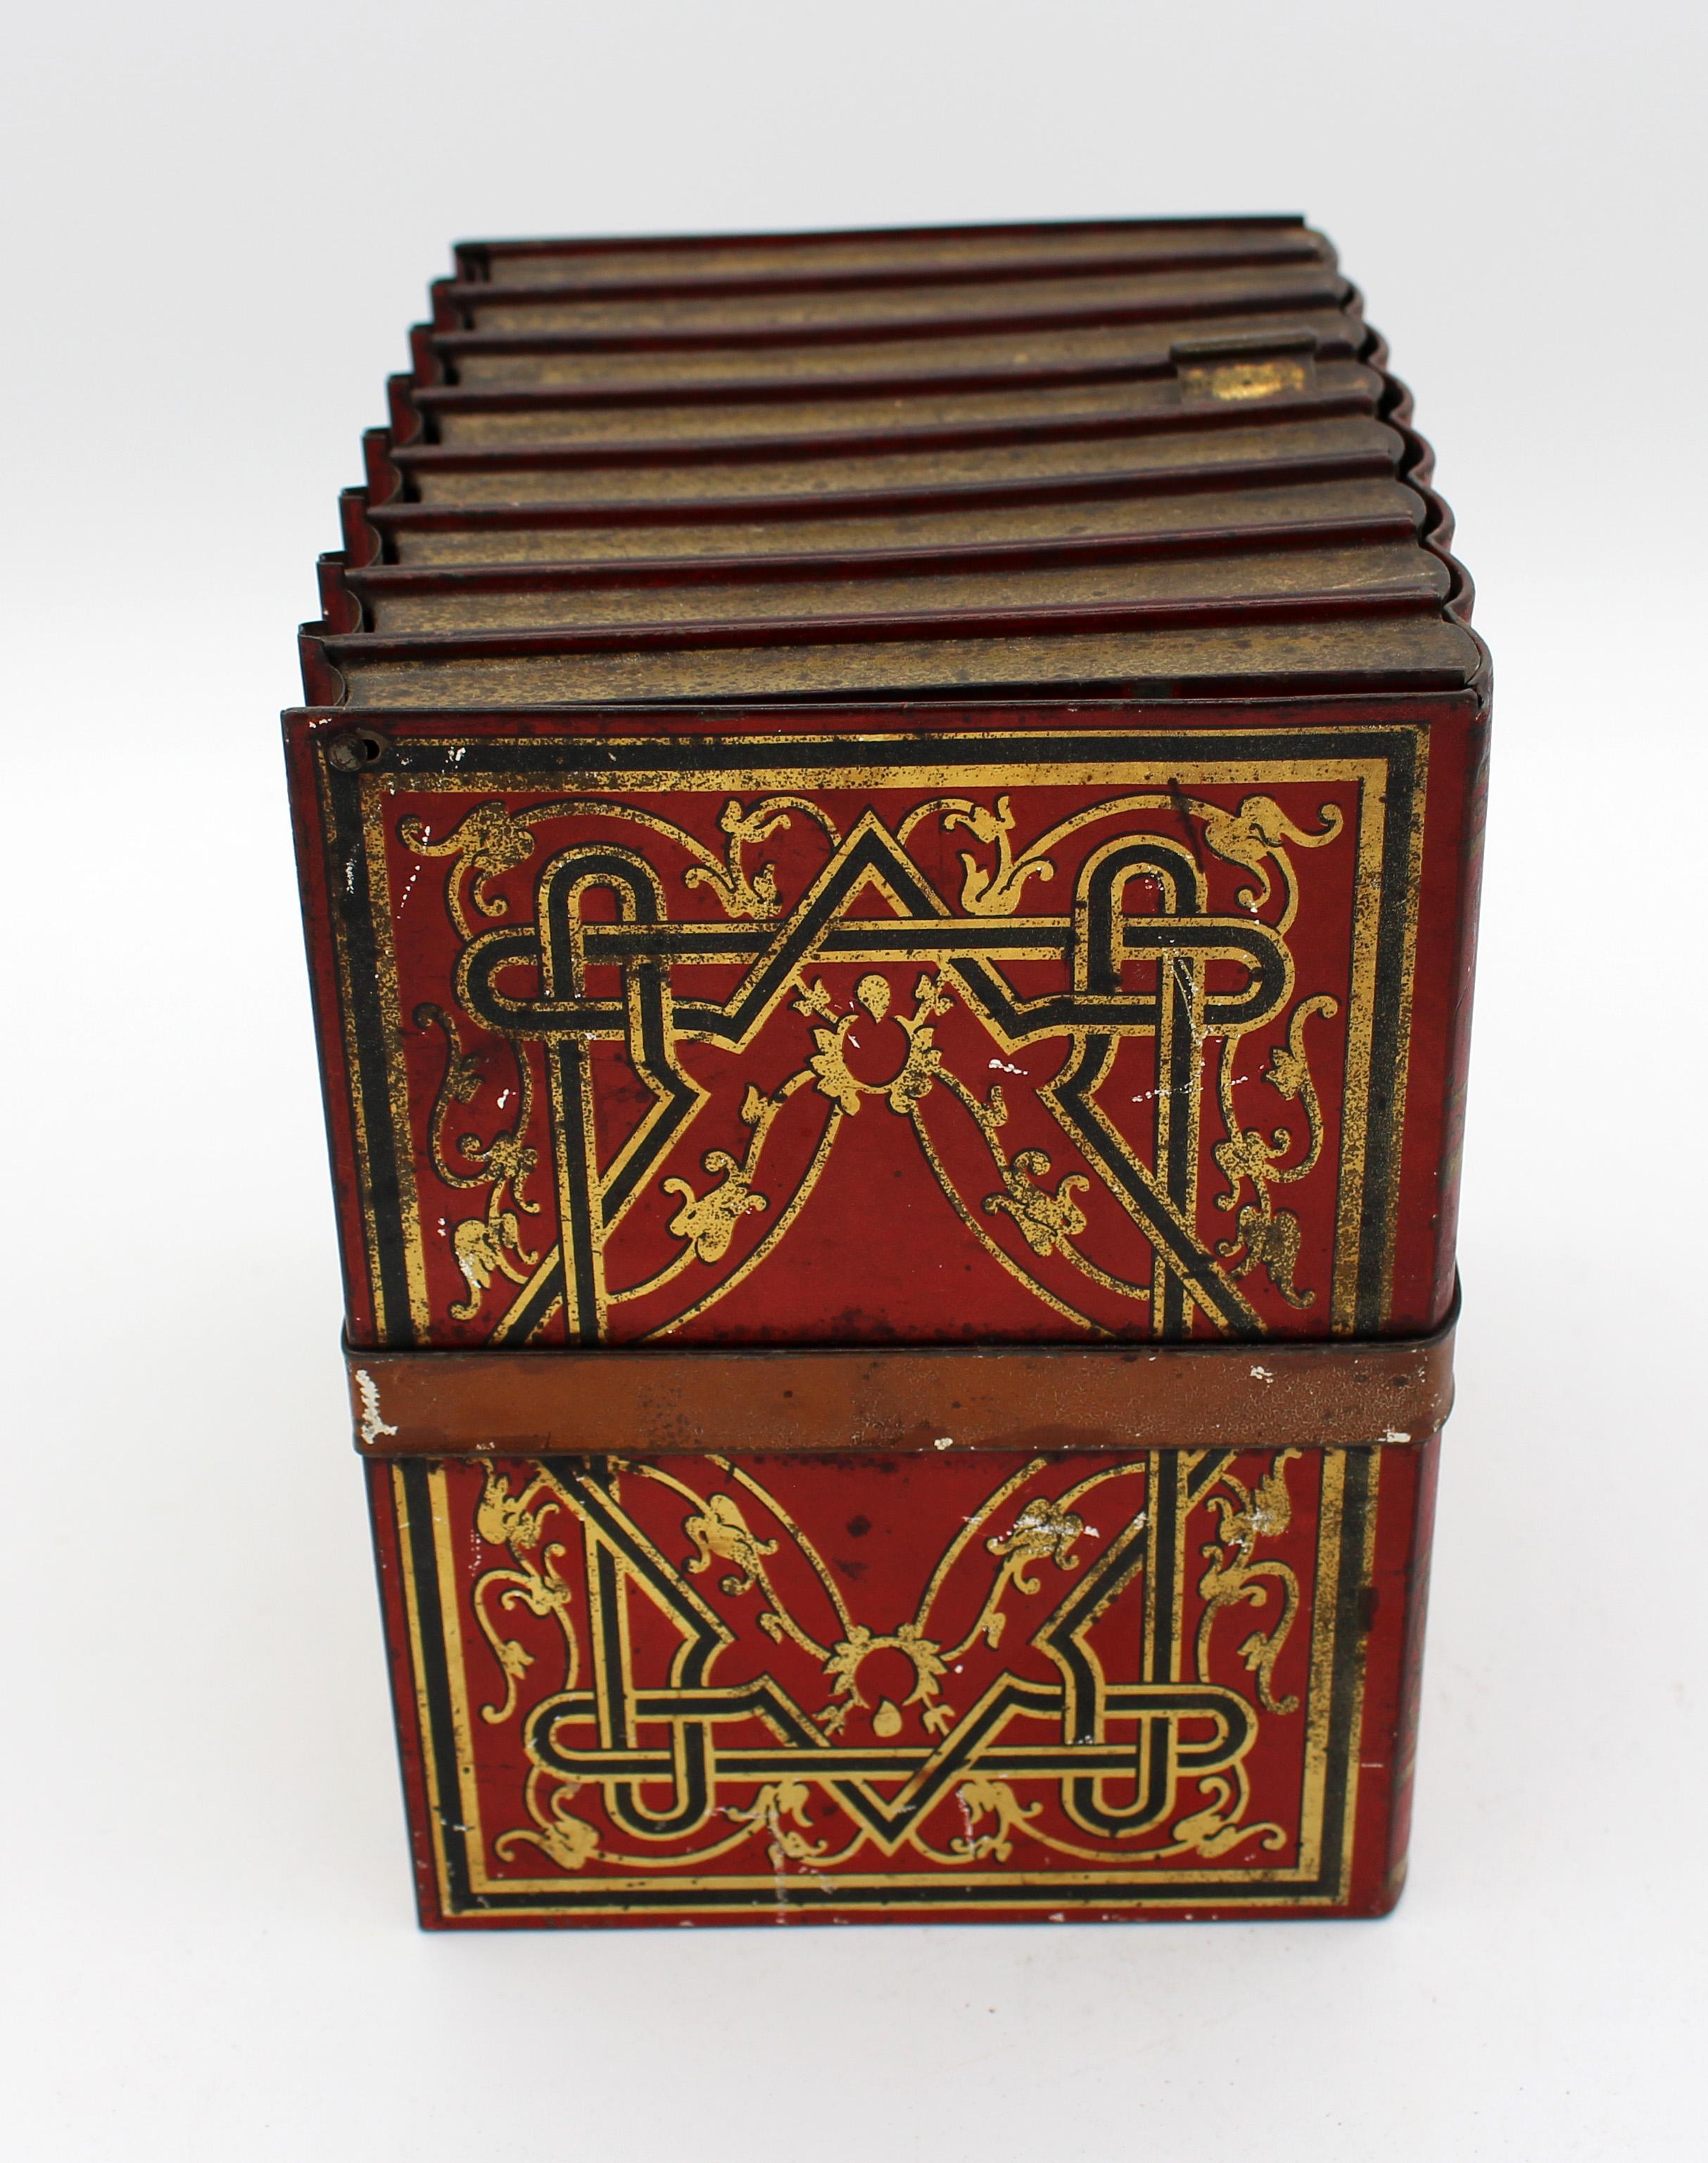 Boîte en fer blanc pour faux livres de Huntley & Palmer, 1910, anglais. Sous la forme d'un groupe sanglé de livres génériques peinture ancienne rouge & noire avec travail de dorure et sangle tan. Usure générale correspondant à l'âge et à